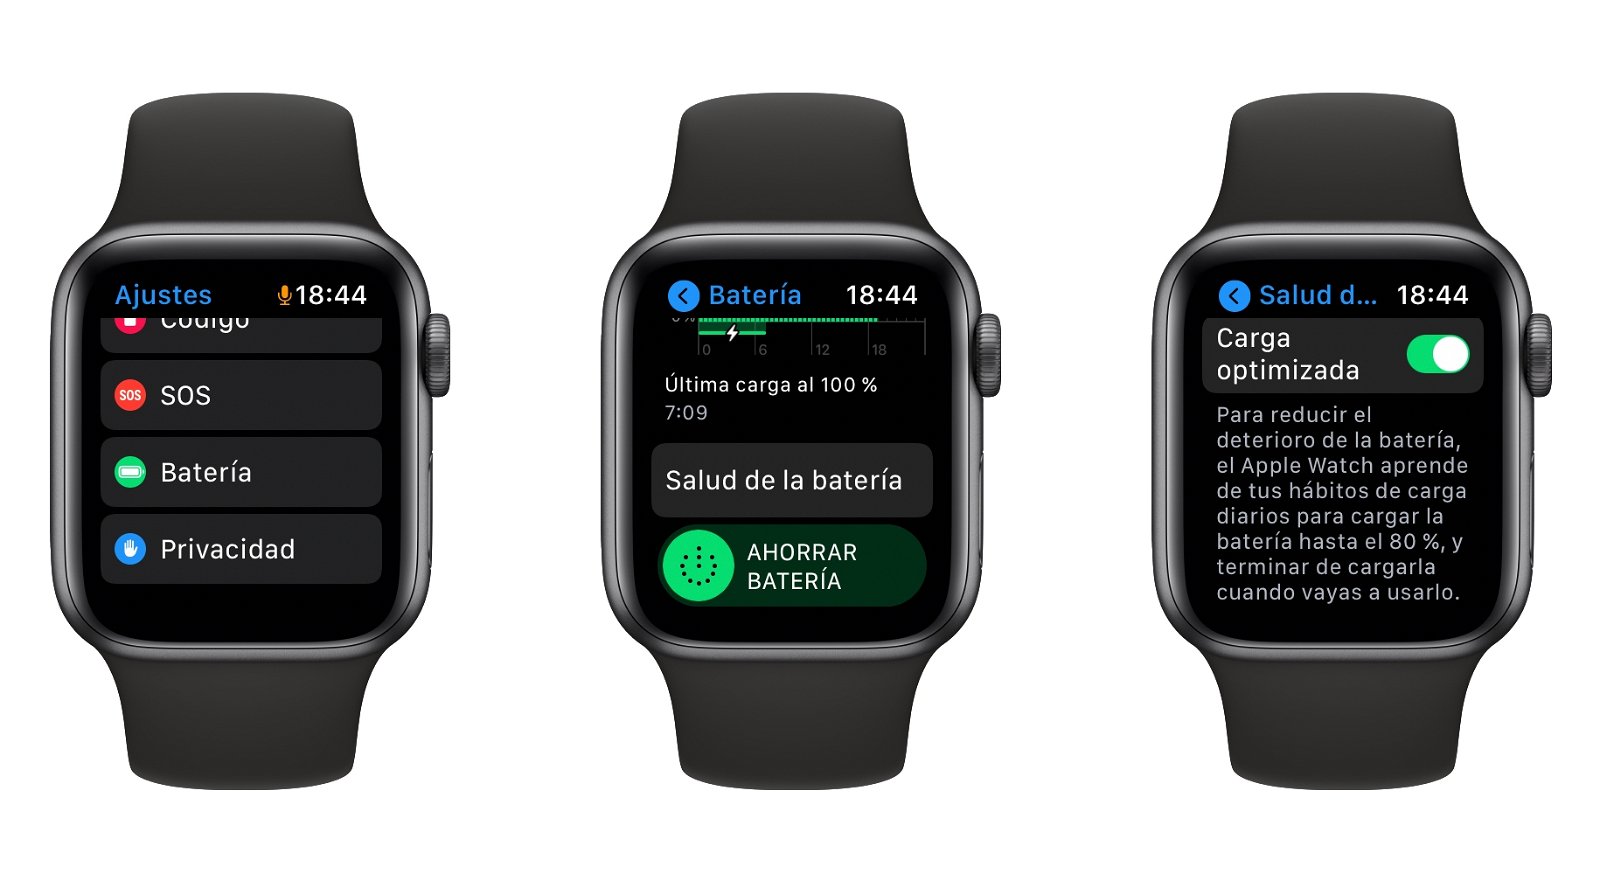 Carga optimizada de la batería del Apple Watch